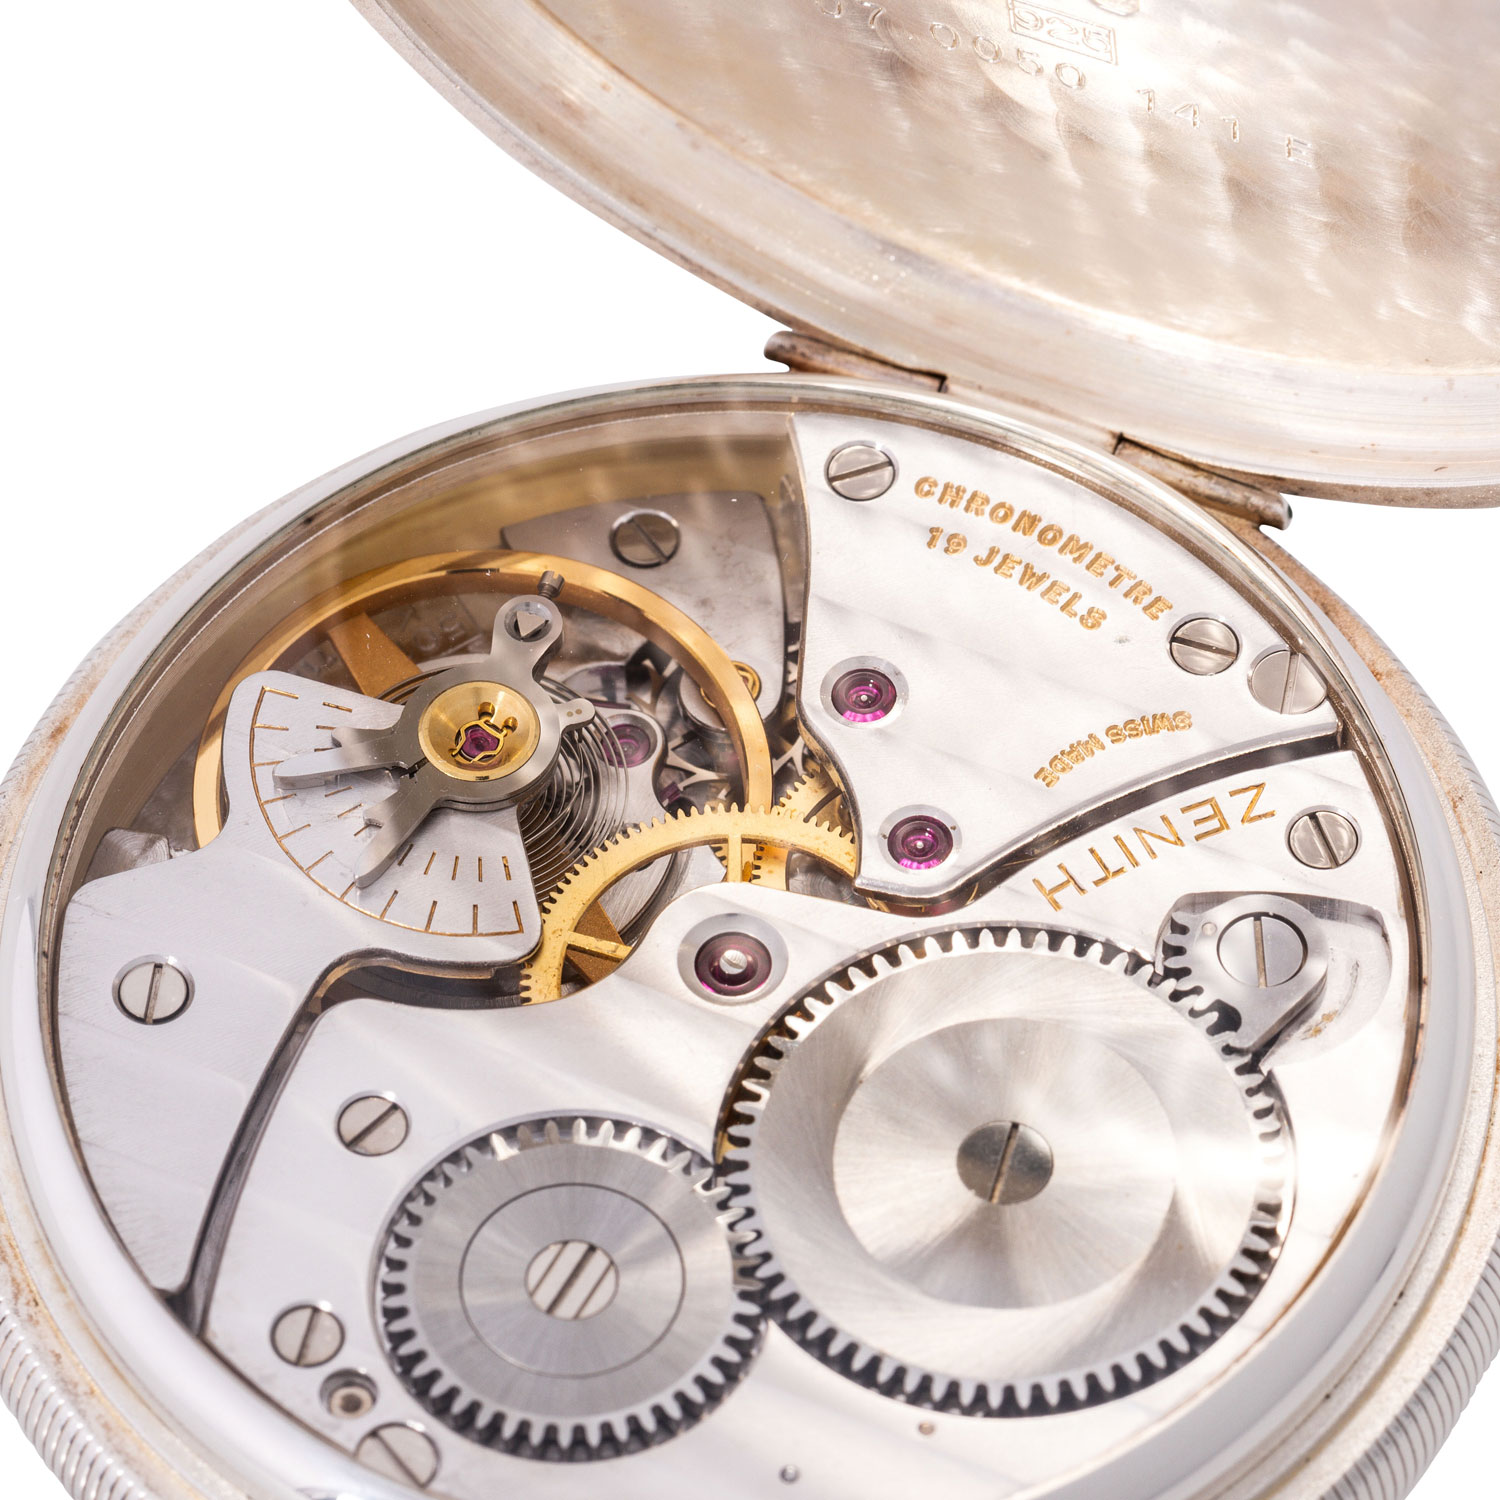 ZENITH Pocketmaster offenes Taschenuhr Chronometer, Ref. 07.0050.141 E. Aus 2002. - Image 4 of 7